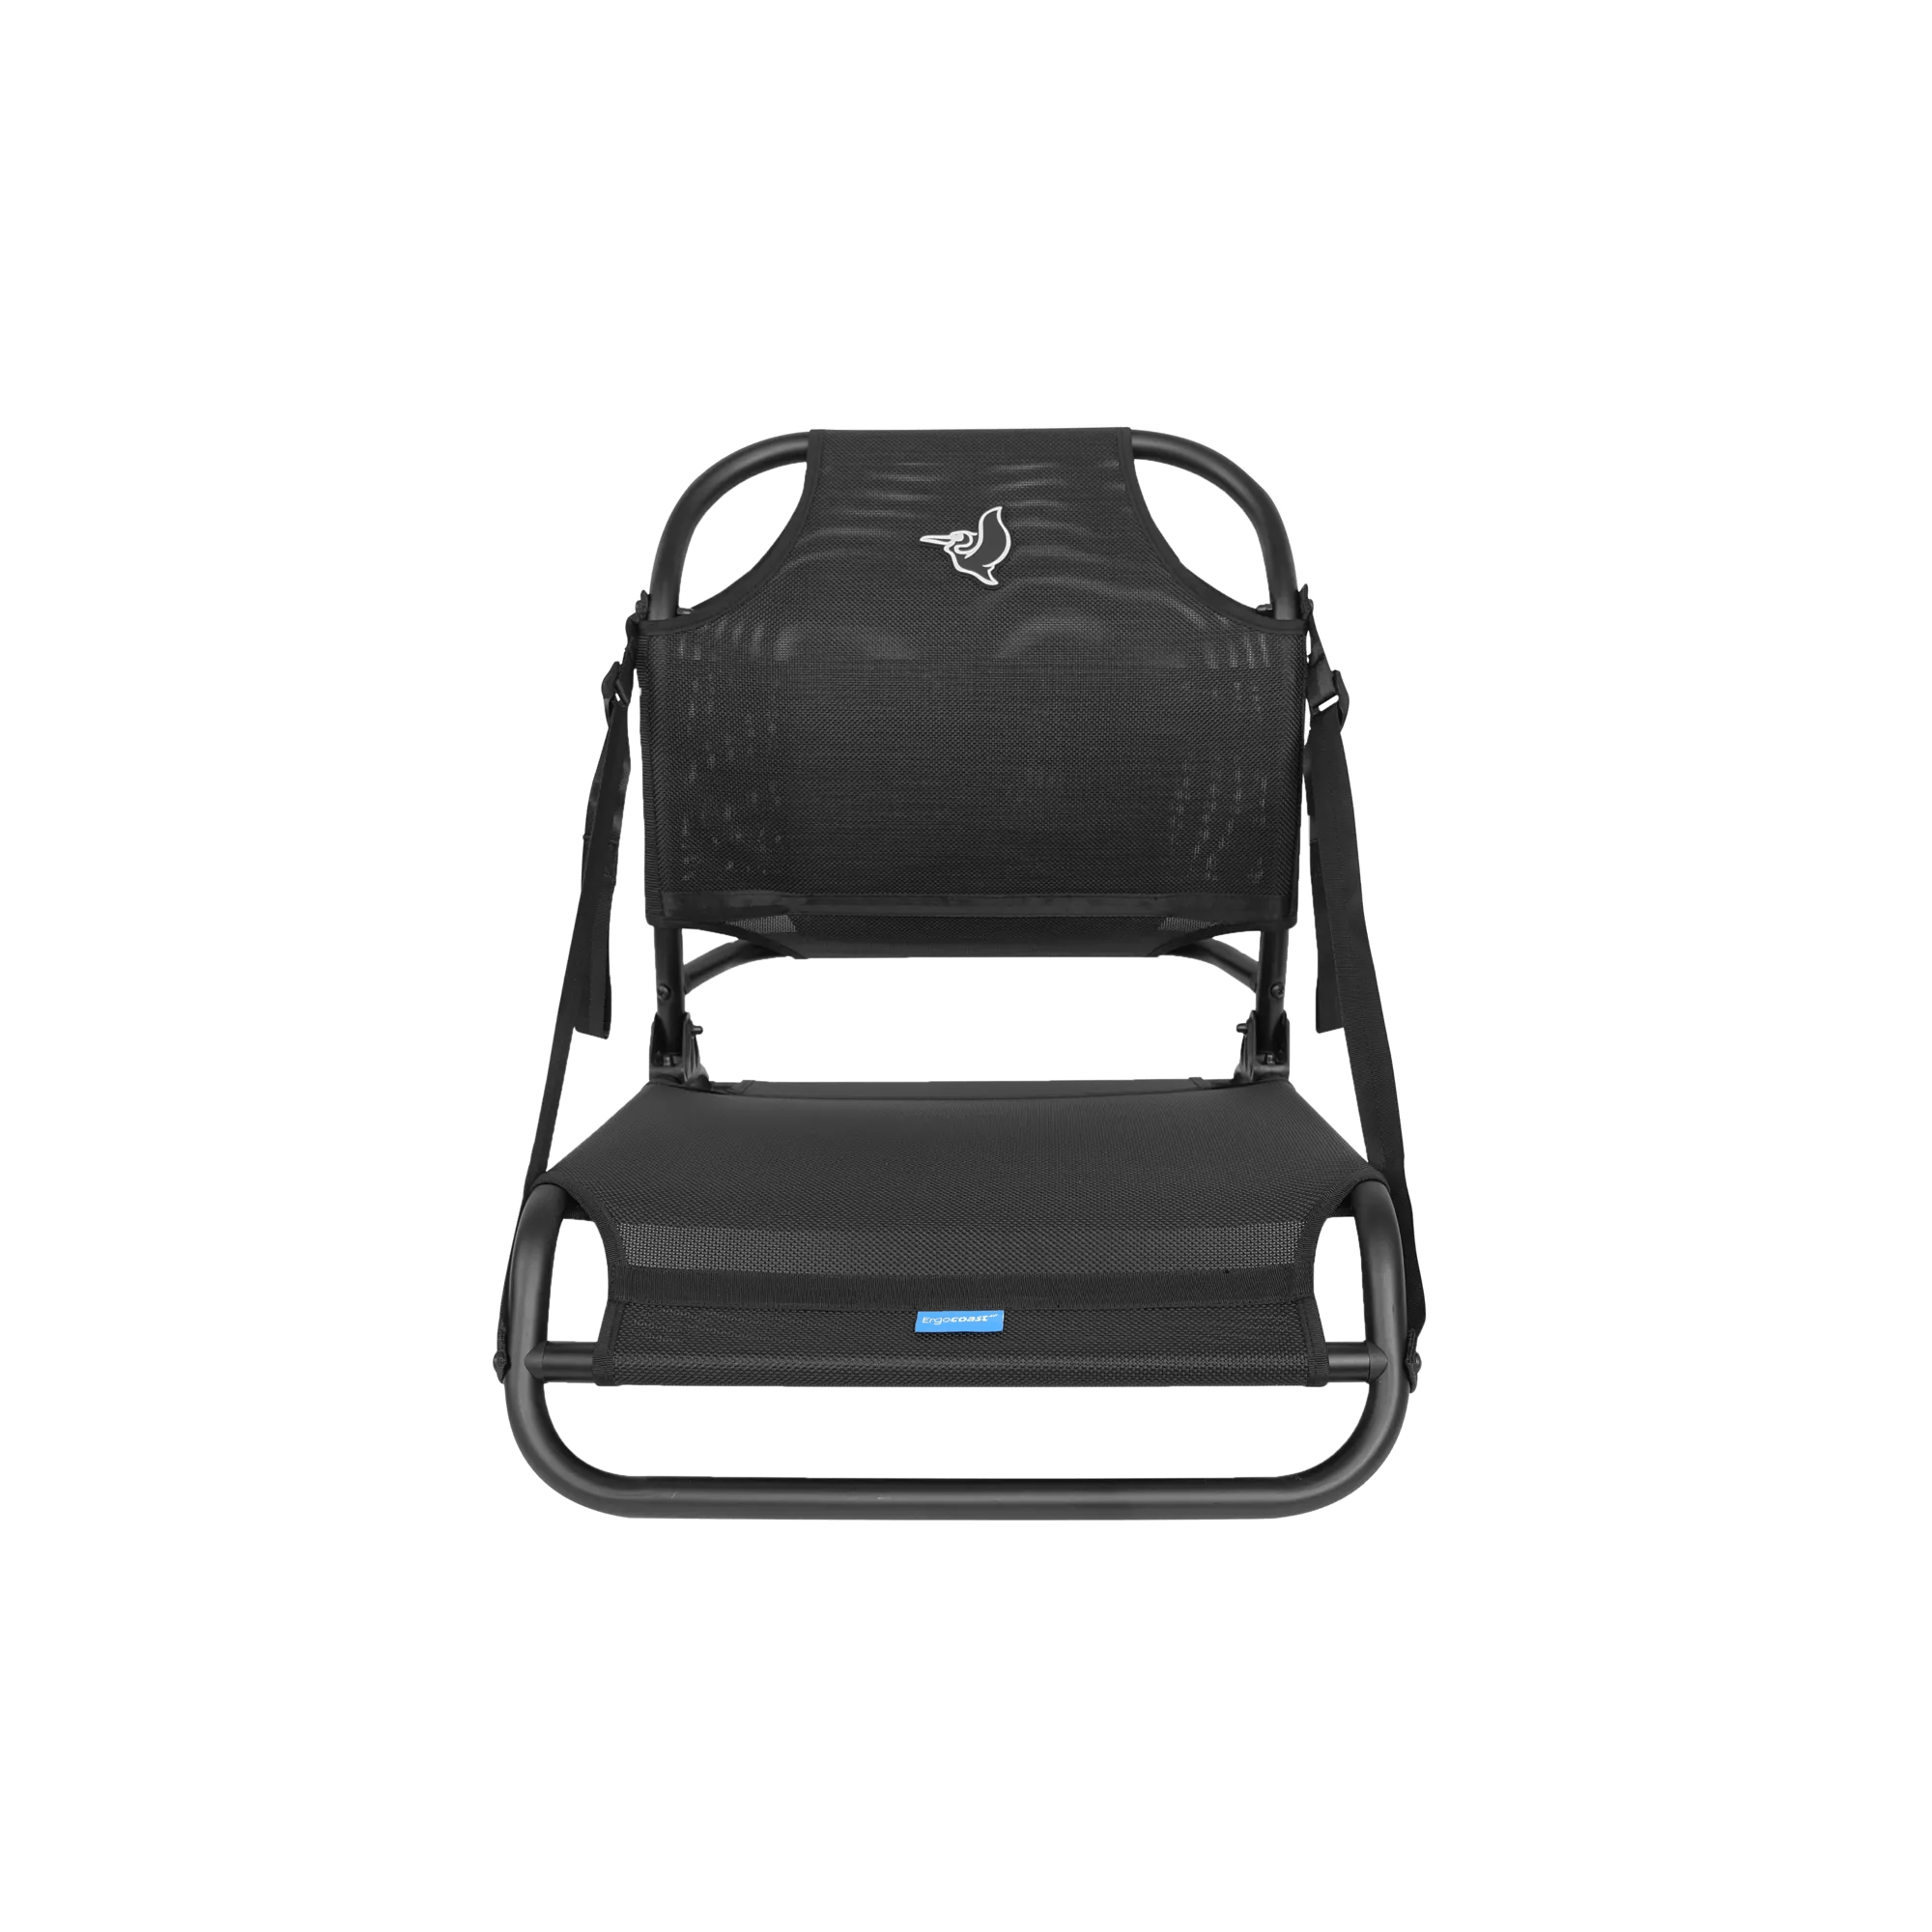 PELICAN - Ergocoast XP Portable Seat -  - PS3001 - TOP